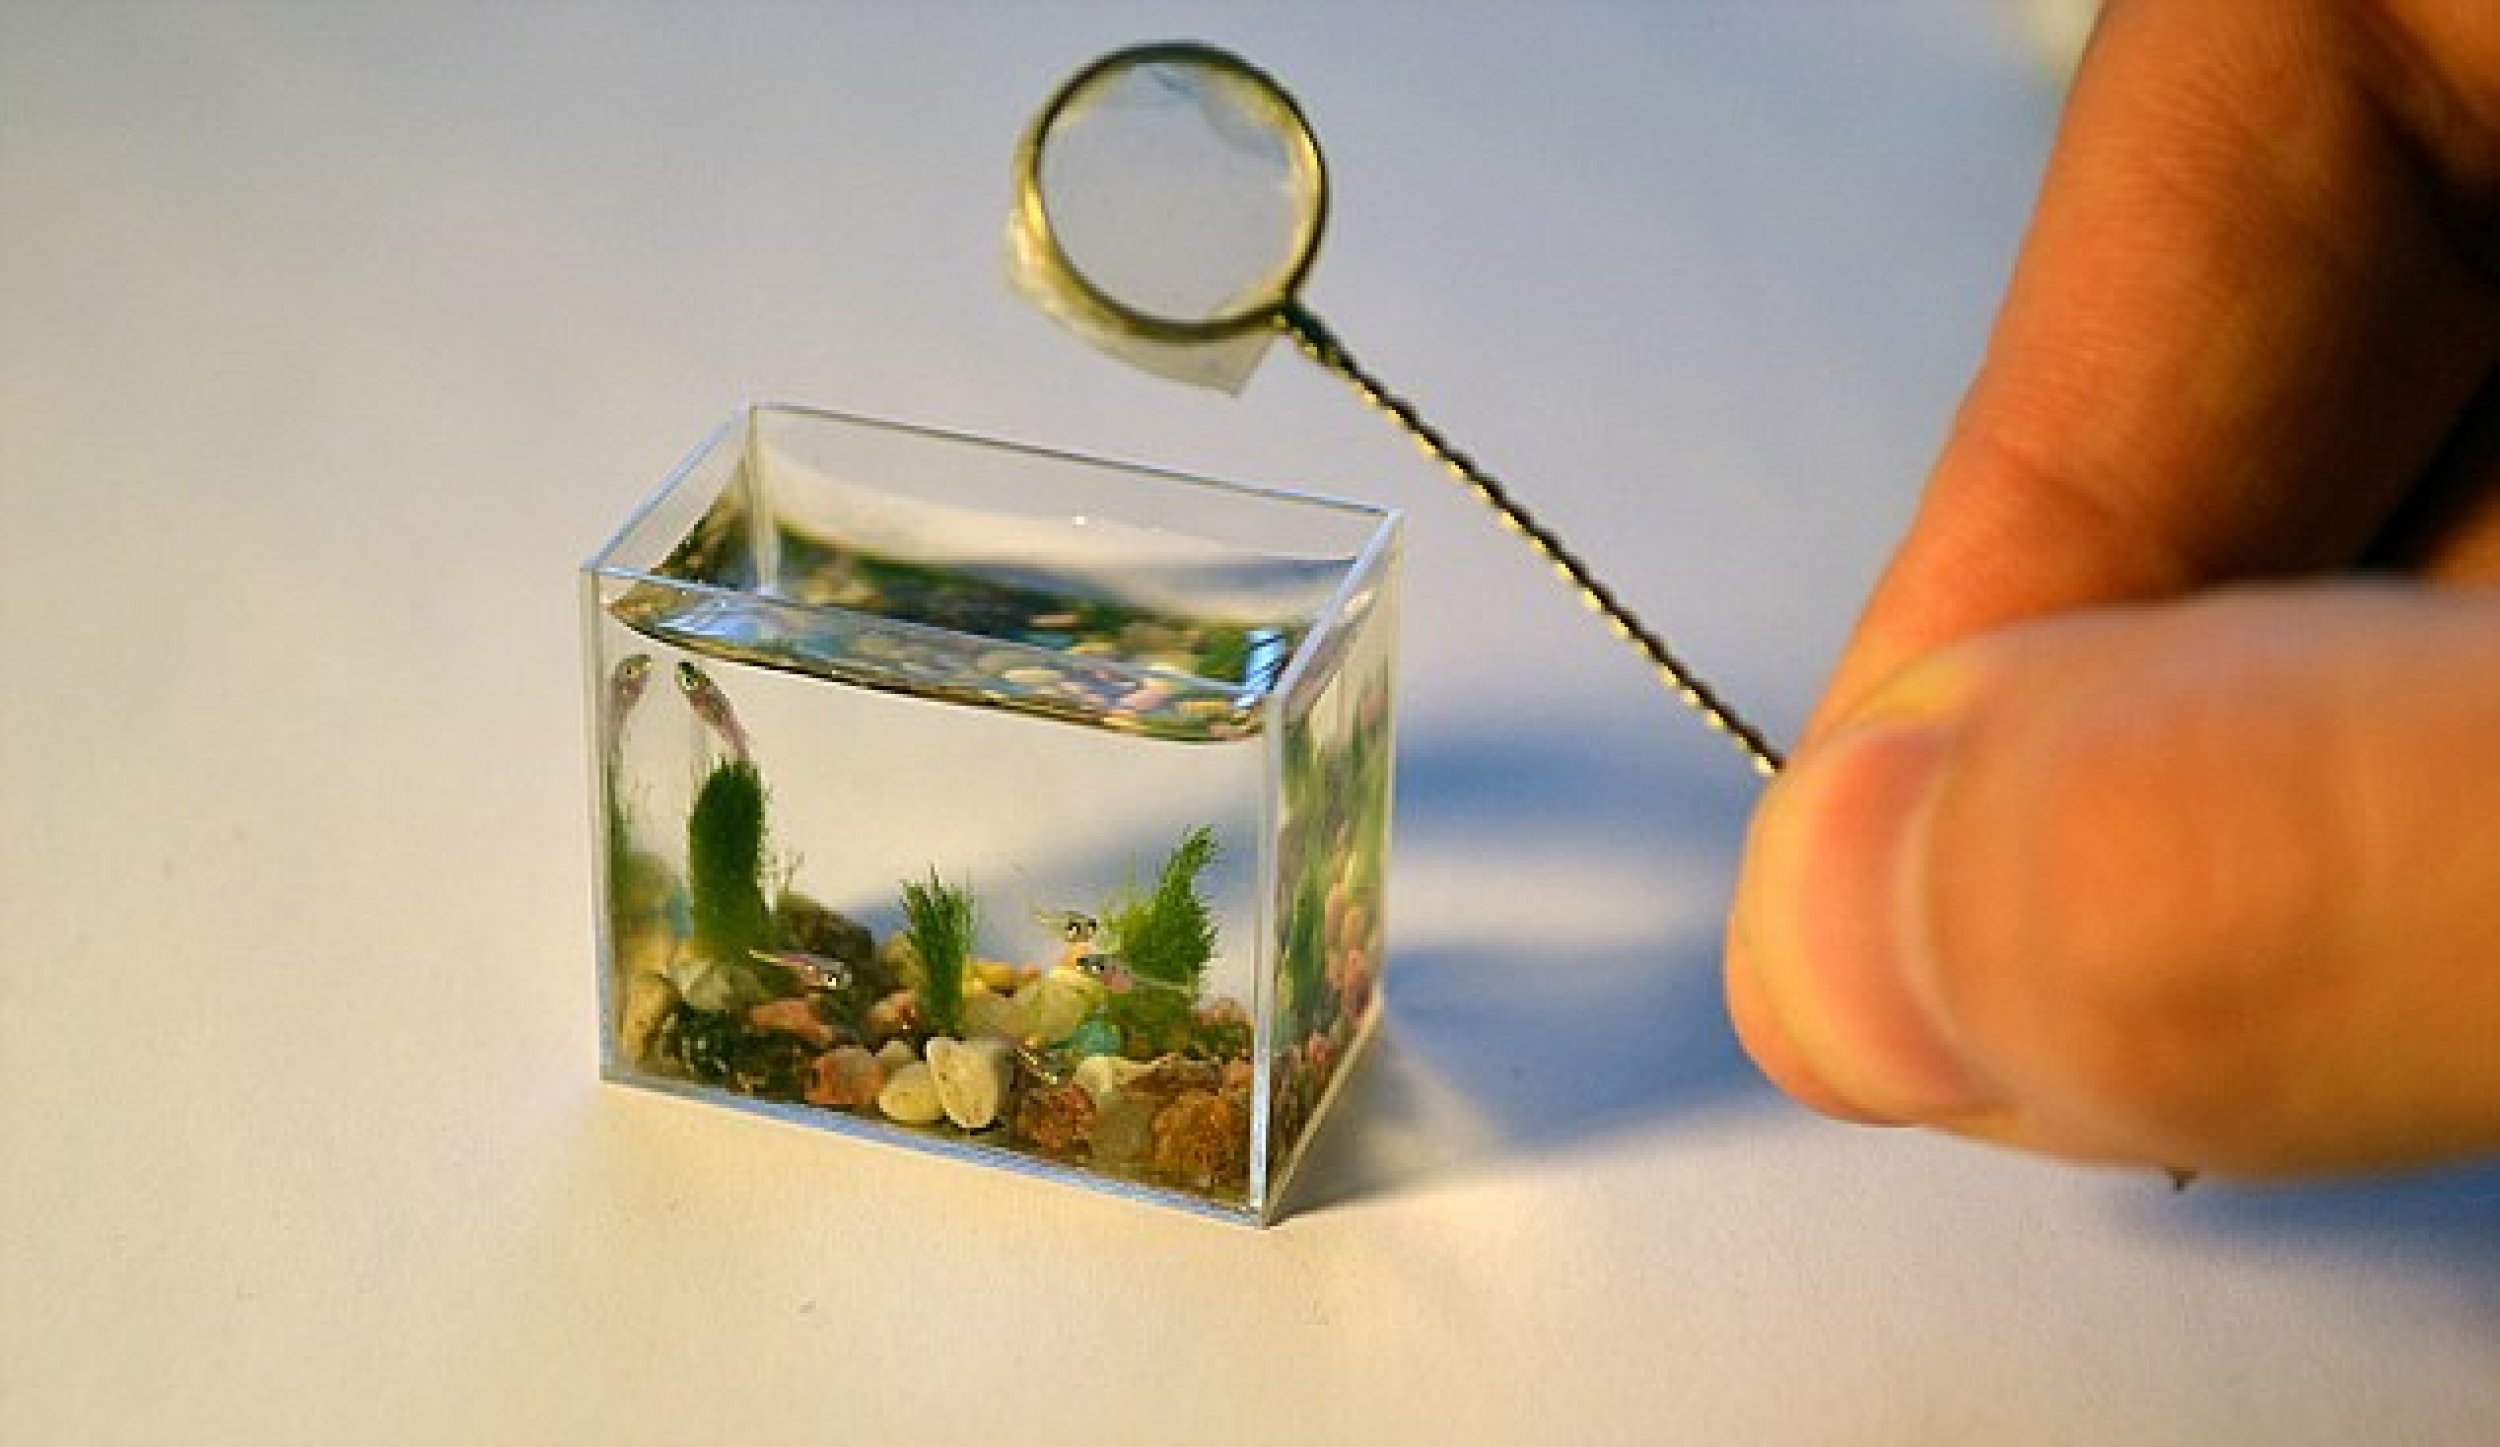 Worlds smallest aquarium with fish